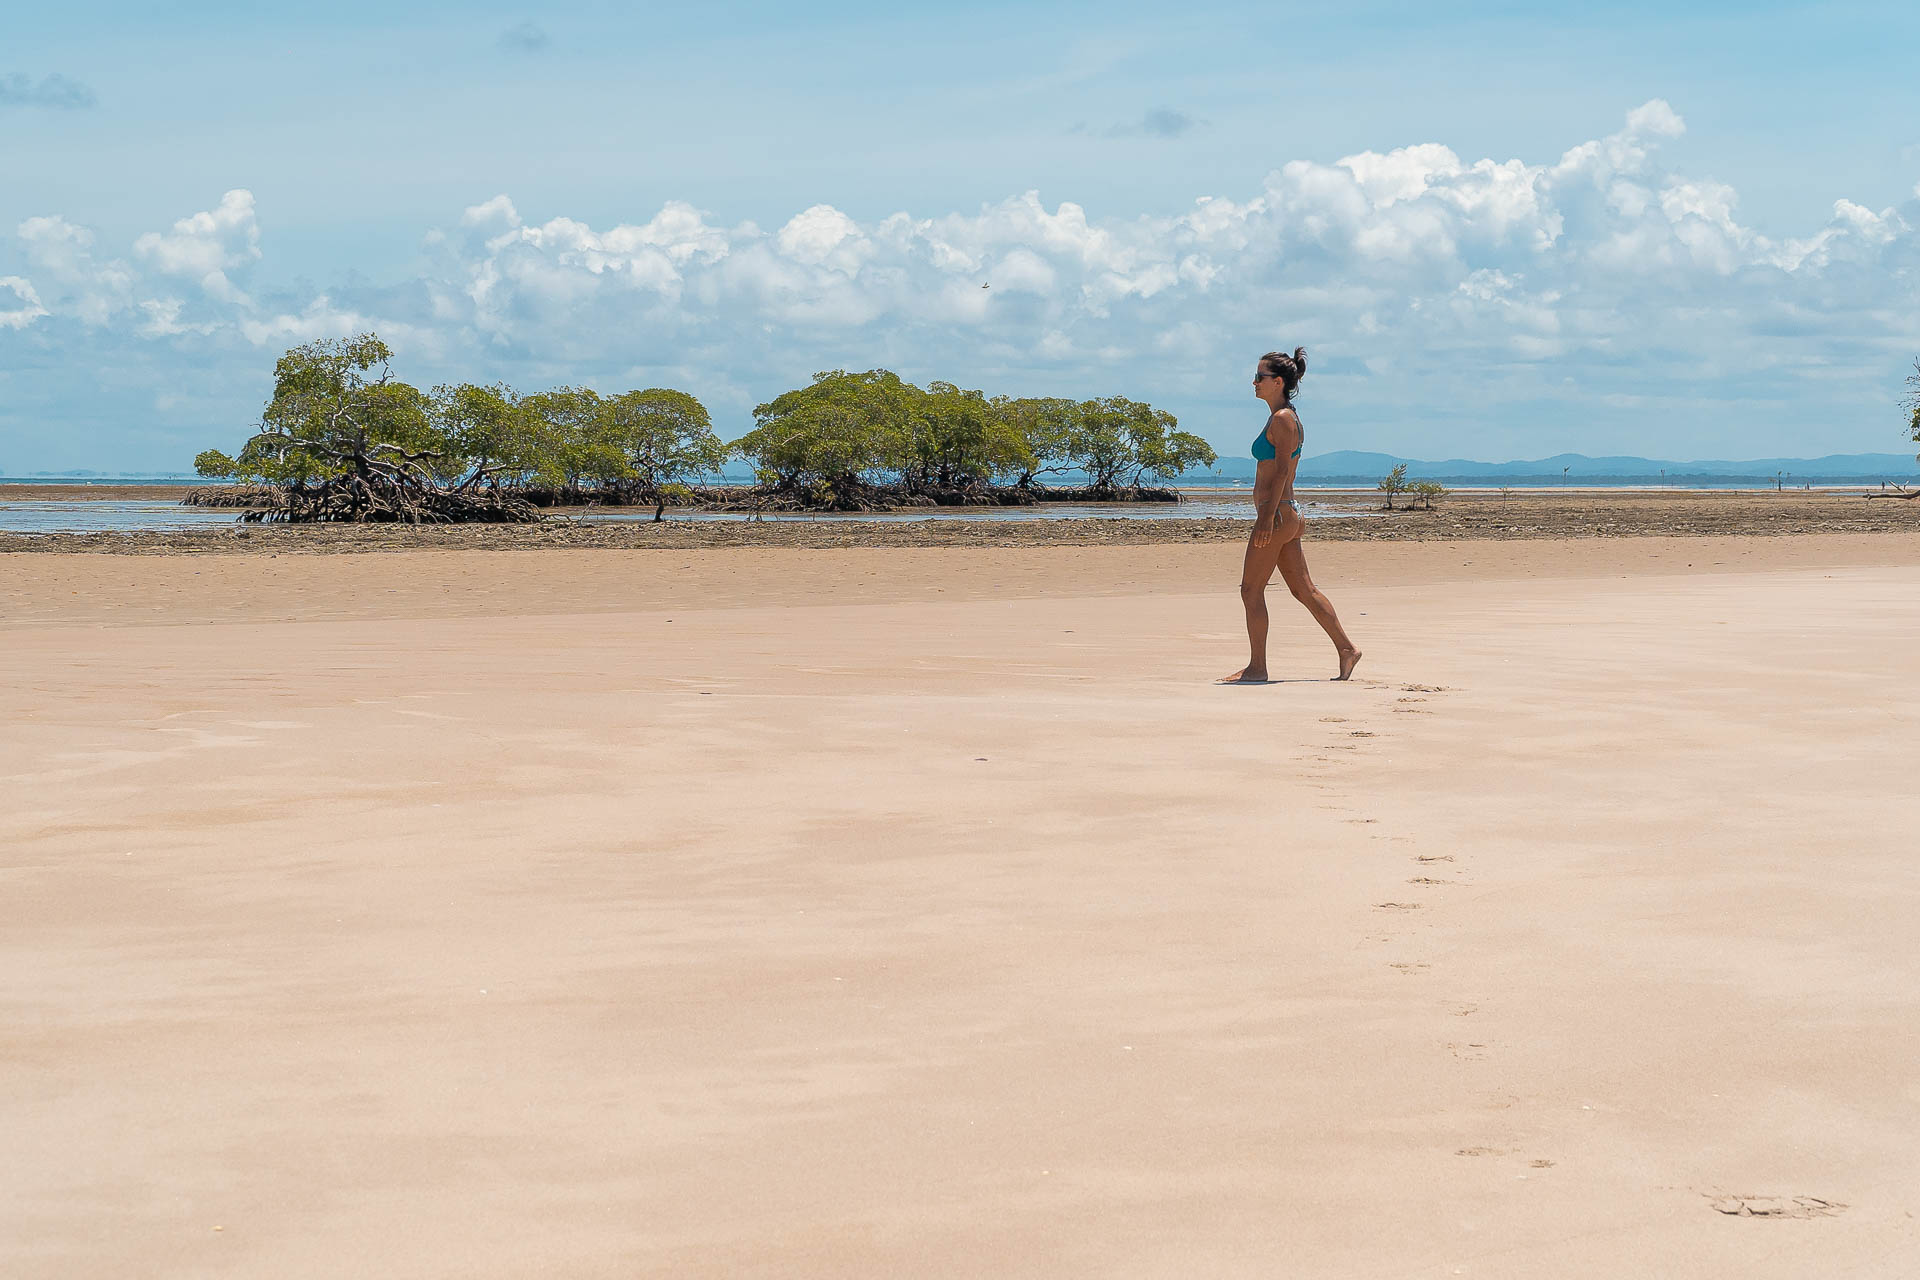 Fernanda andando em uma das praias da Ilha de Boipeba na Bahia